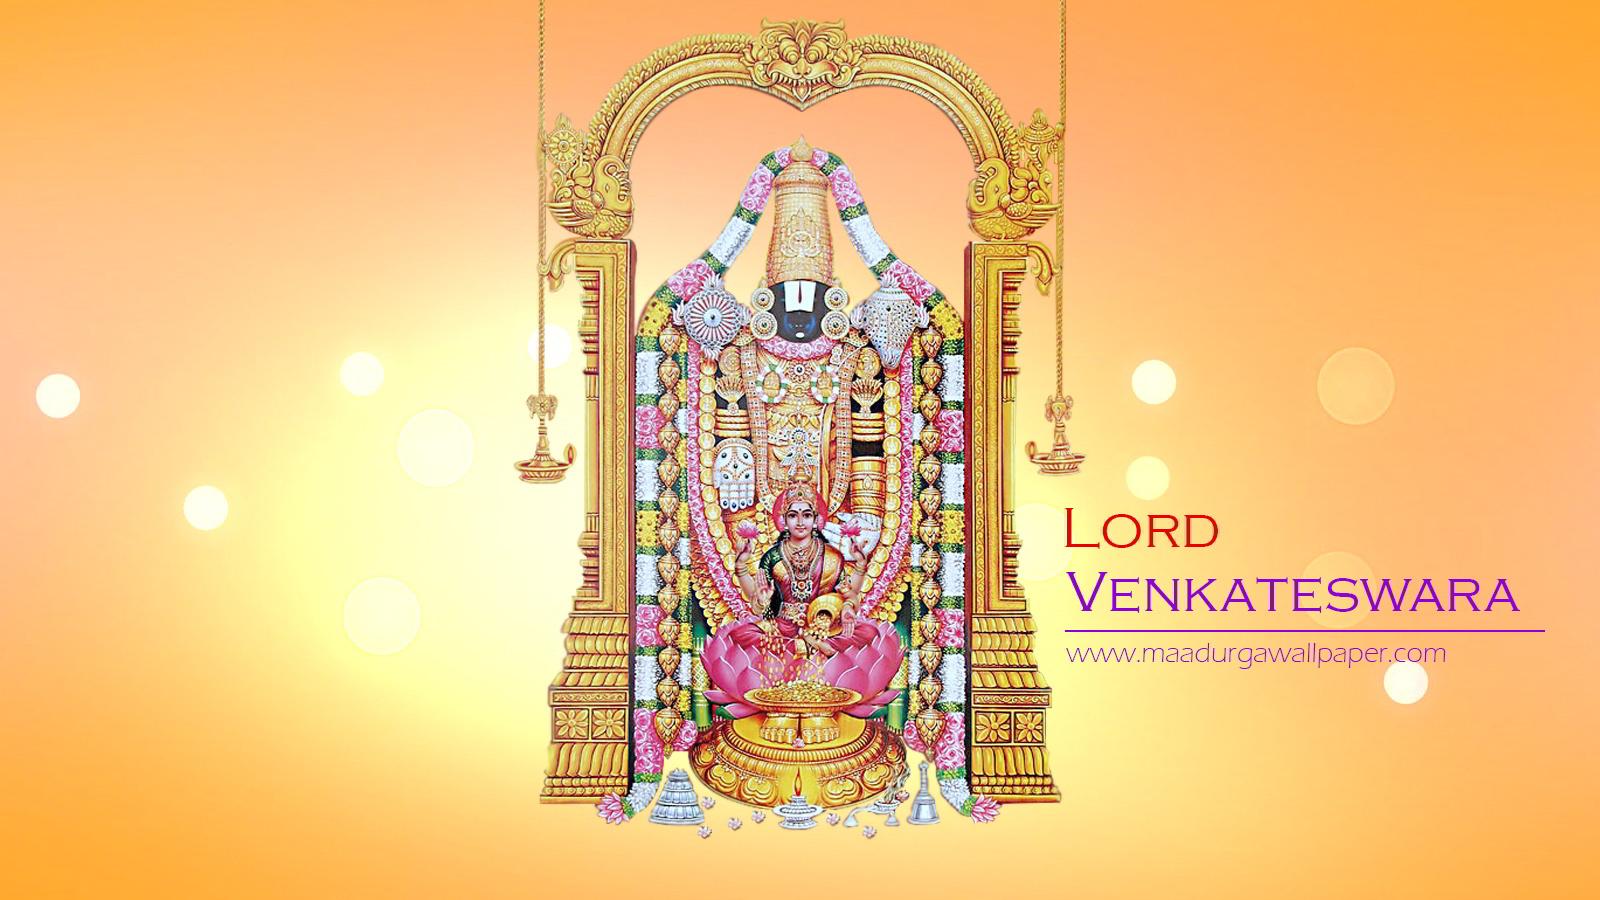 Venkateswara Swamy image & HD wallpaper